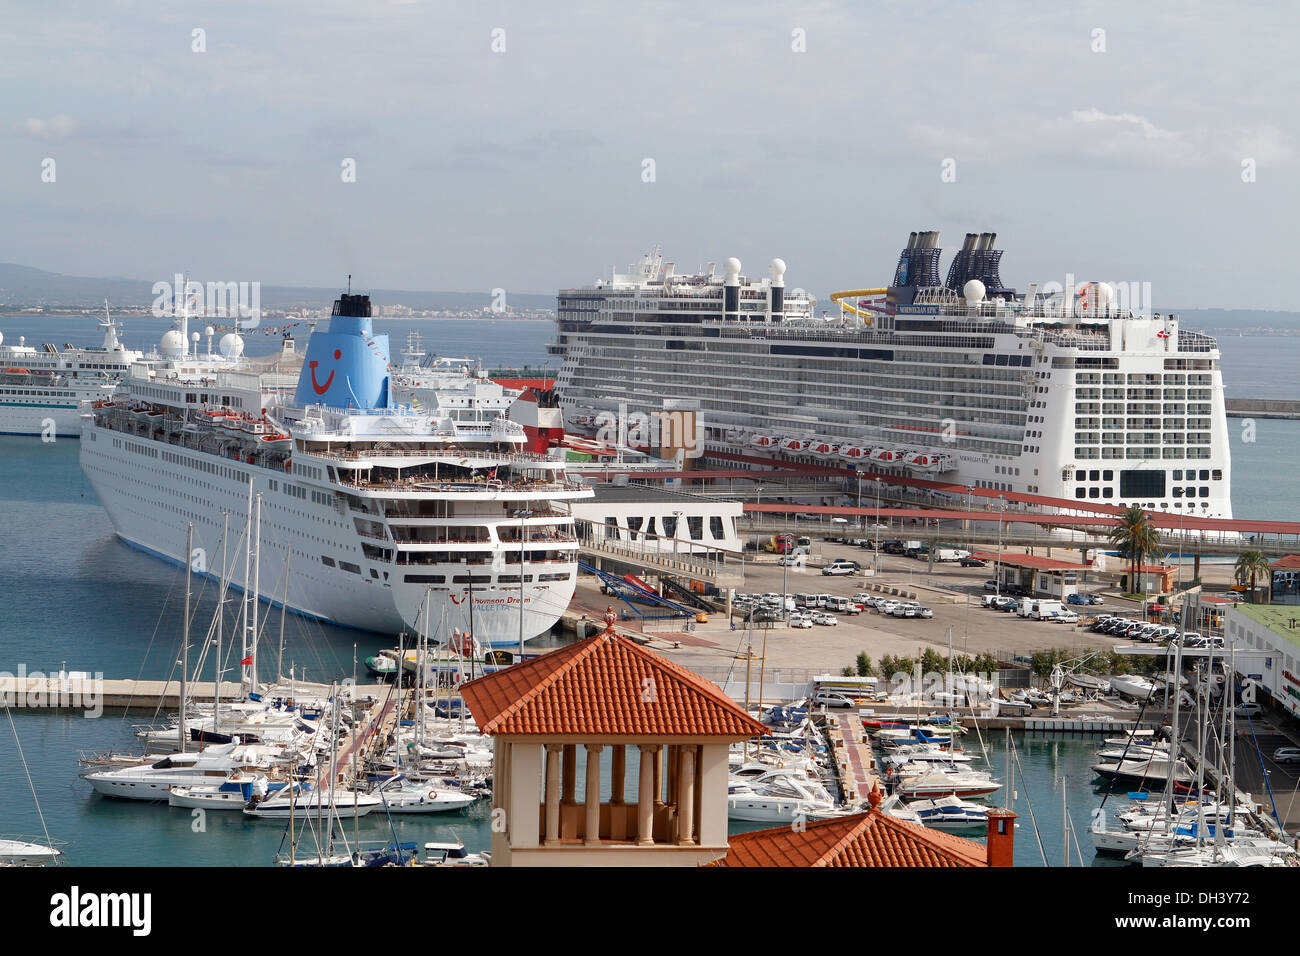 palma de mallorca cruise port royal caribbean